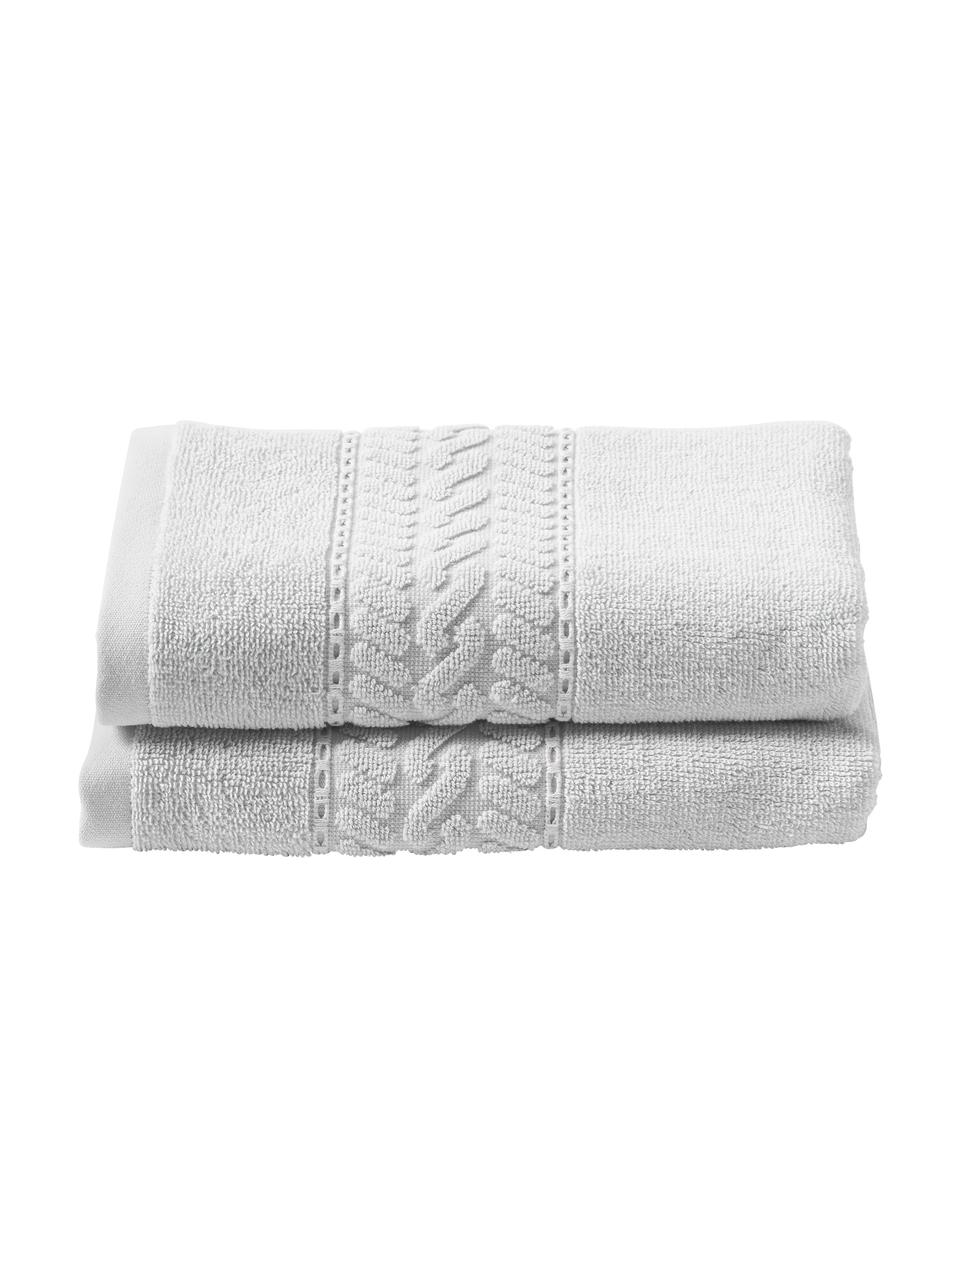 Ręcznik Cordelia, różne rozmiary, 100% bawełna, Jasny szary, Ręcznik, S 50 x D 100 cm, 2 szt.